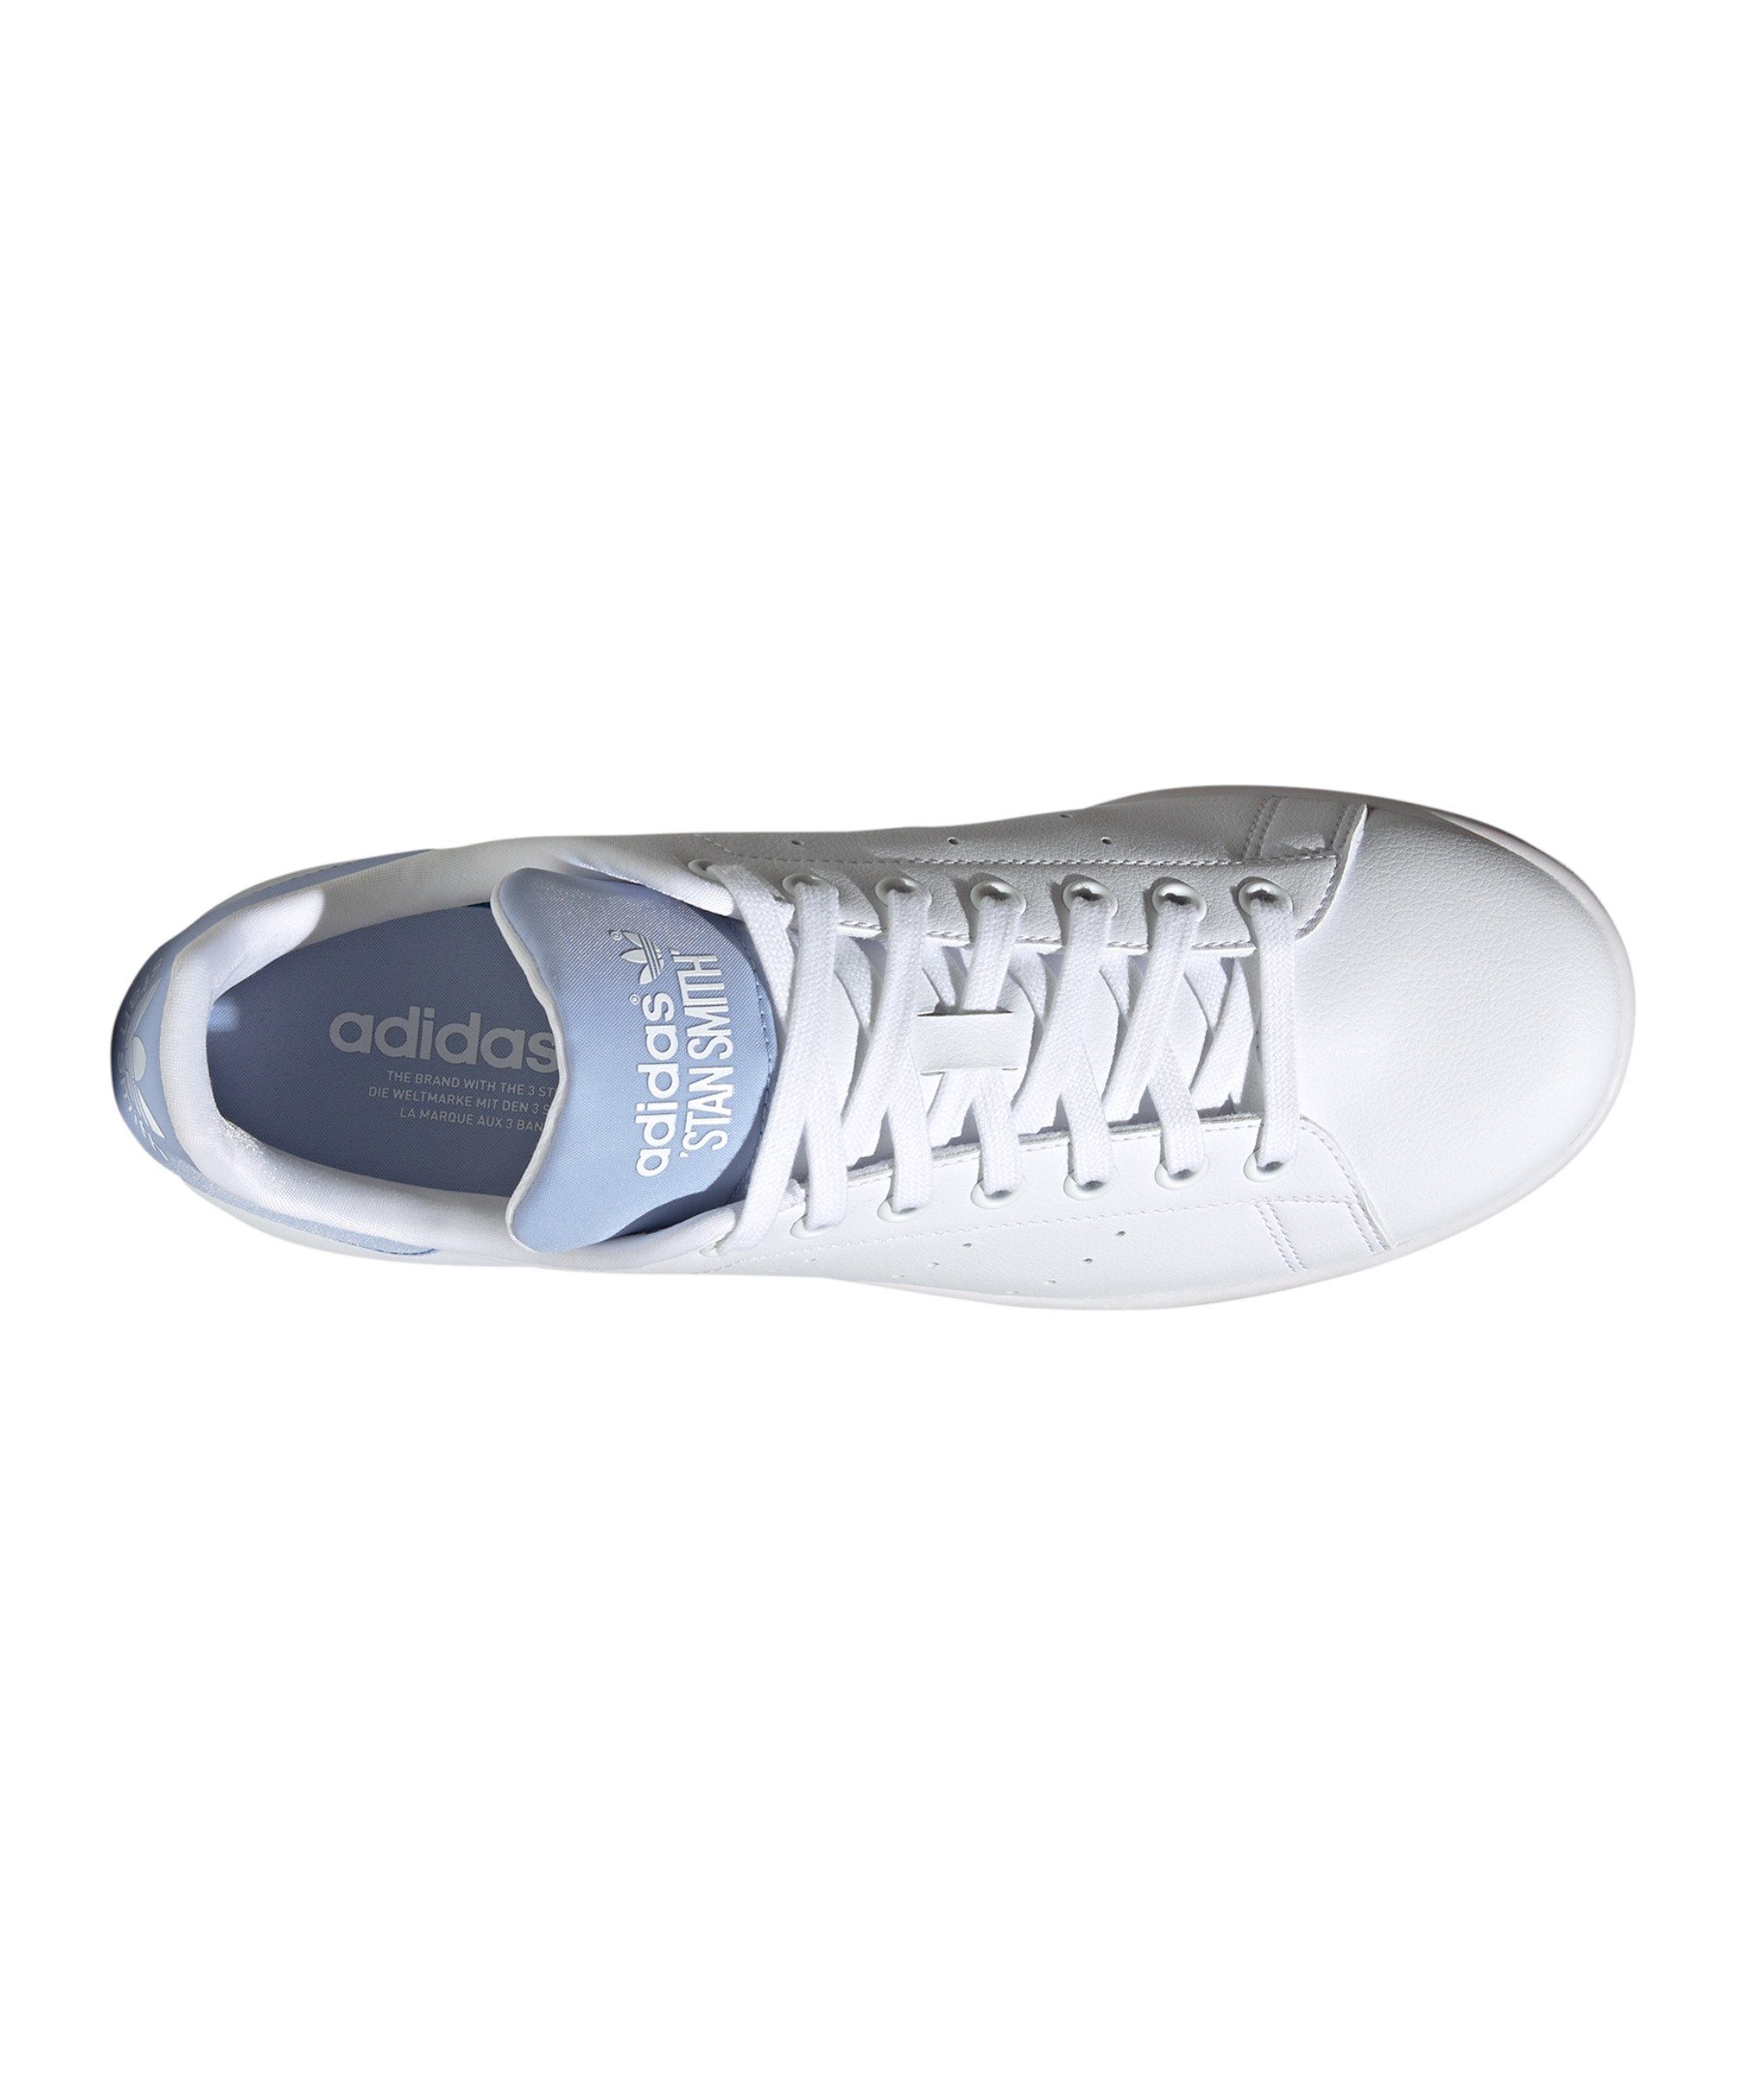 adidas Originals Stan weissweissblau Sneaker Smith